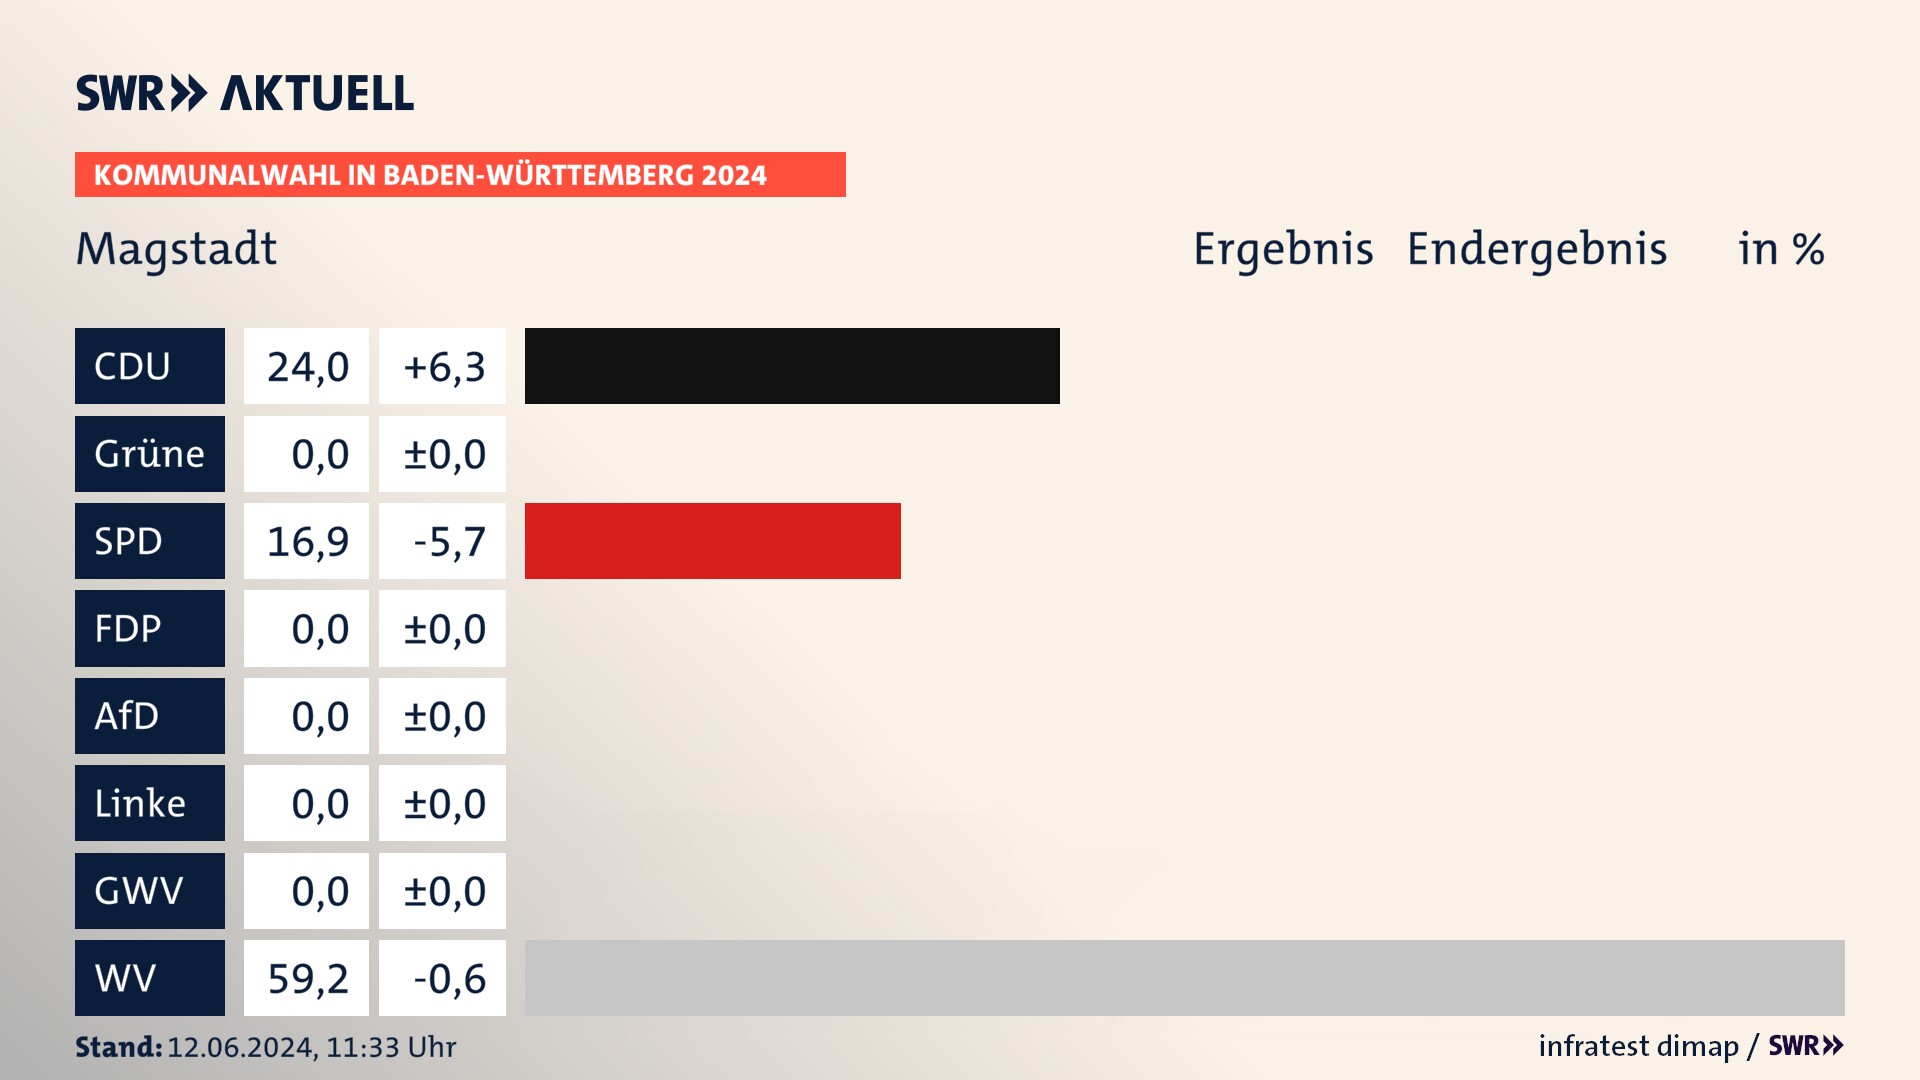 Kommunalwahl 2024 Endergebnis Zweitstimme für Magstadt. In Magstadt erzielt die CDU 24,0 Prozent der gültigen  Stimmen. Die SPD landet bei 16,9 Prozent. Die Wählervereinigungen erreichen 59,2 Prozent.